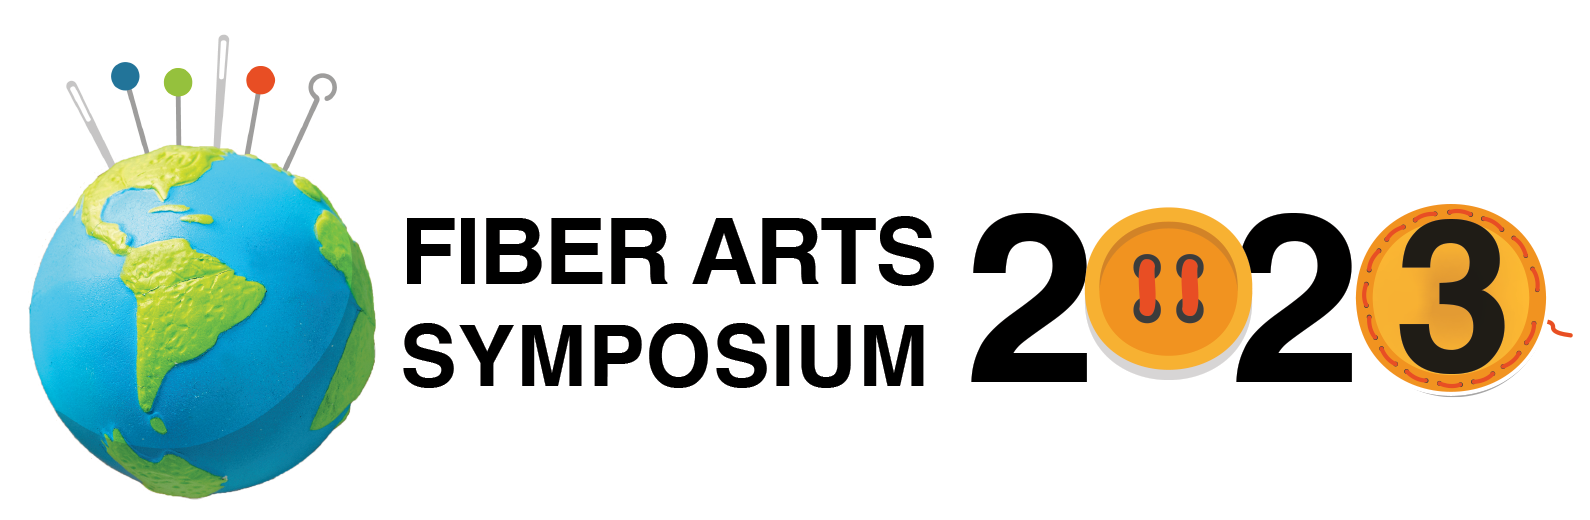 Fiber Arts Symposium 2021